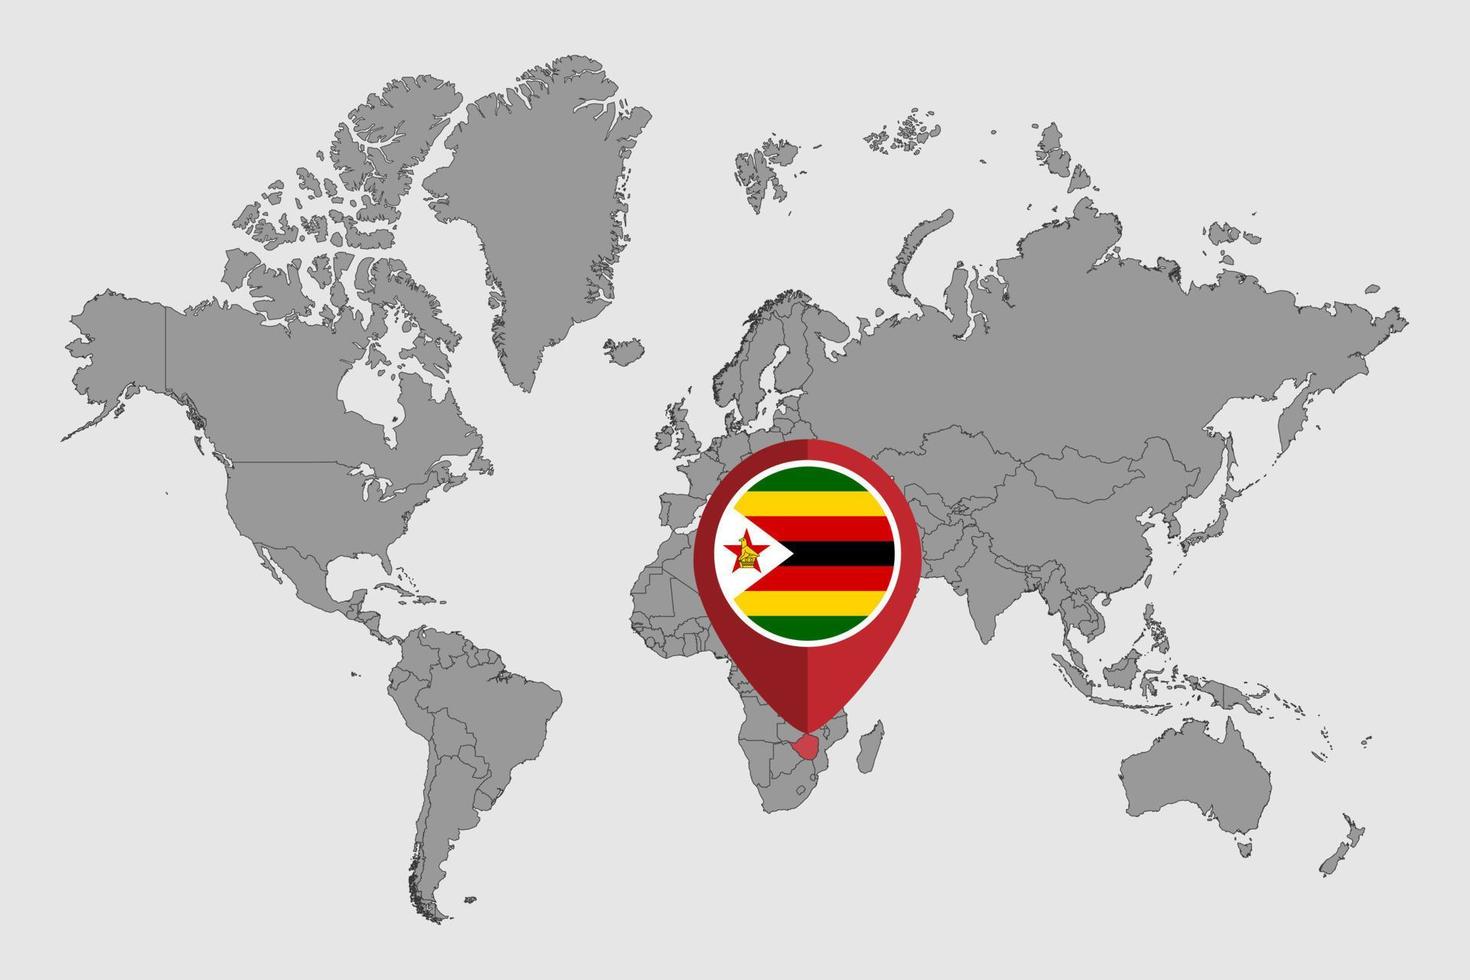 nålkarta med zimbabwe-flaggan på världskartan. vektor illustration.